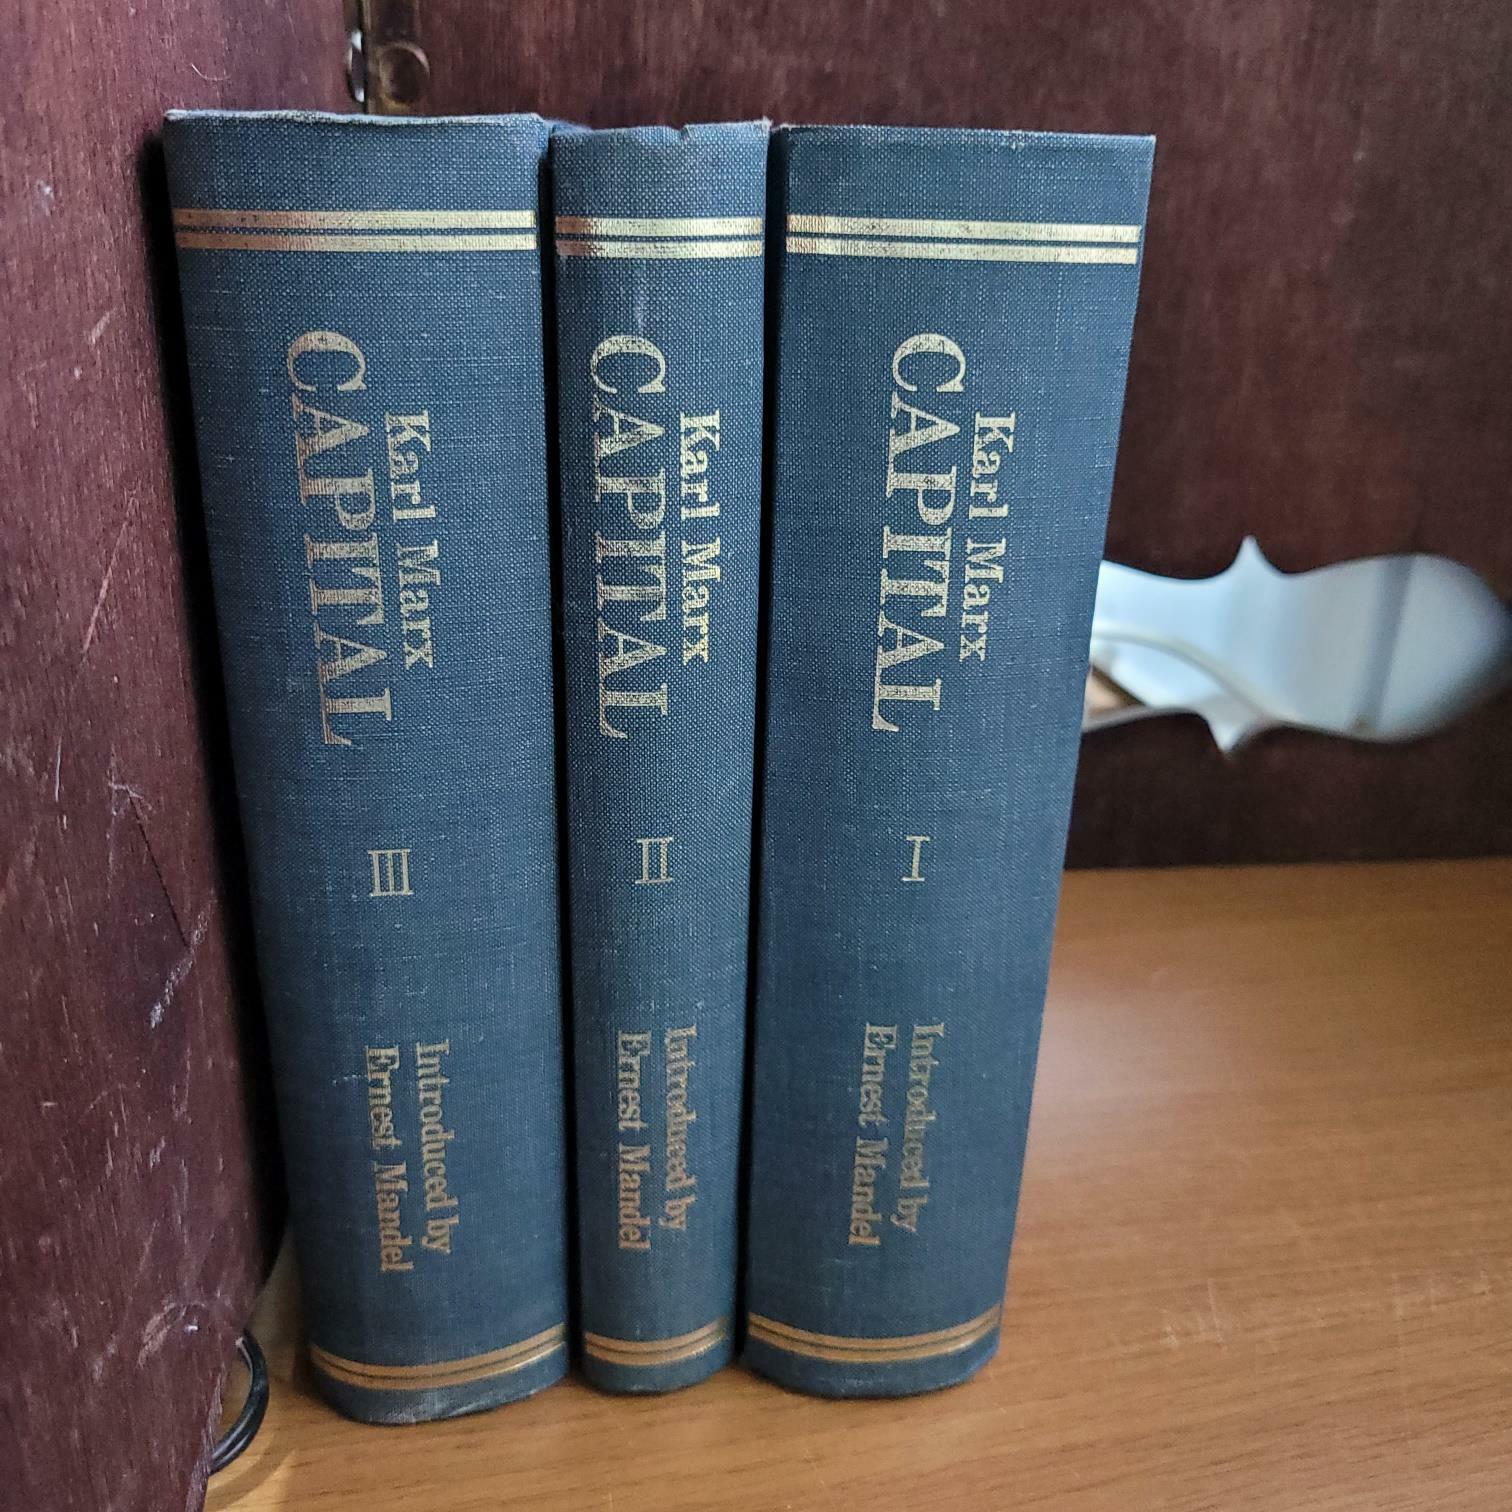 [중고] 펭귄북스) 칼 마르크스 KARL MARX CAPITAL Volume 1-3 [전3권/실사진 참고]